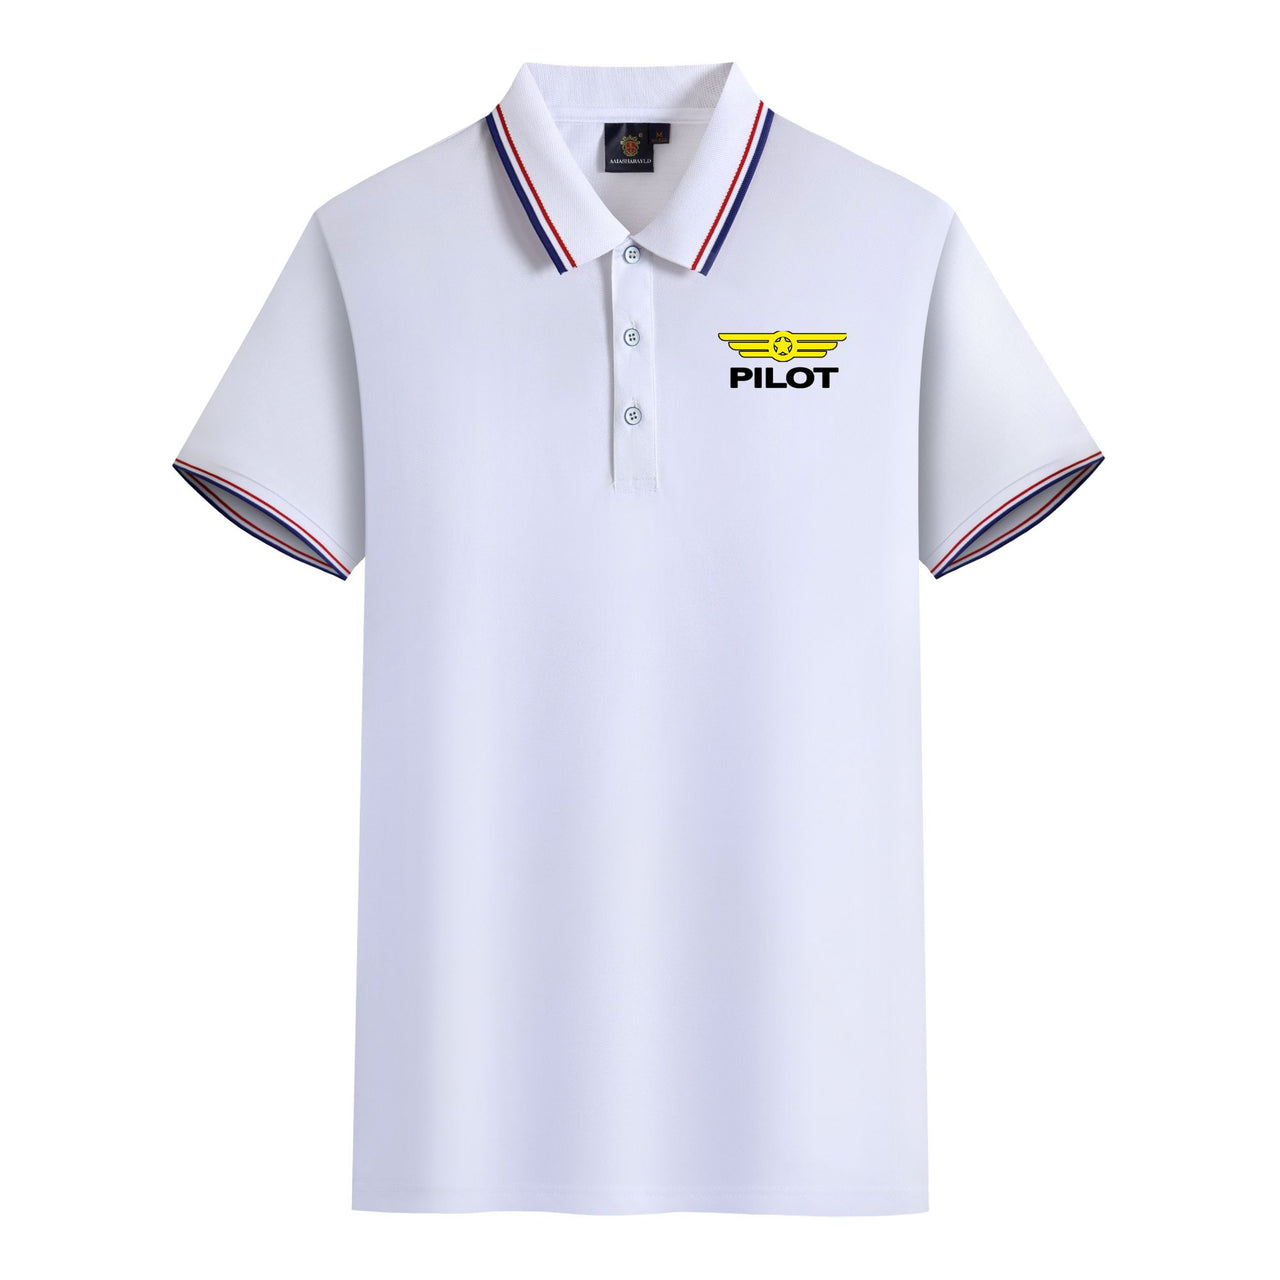 Pilot & Badge Designed Stylish Polo T-Shirts